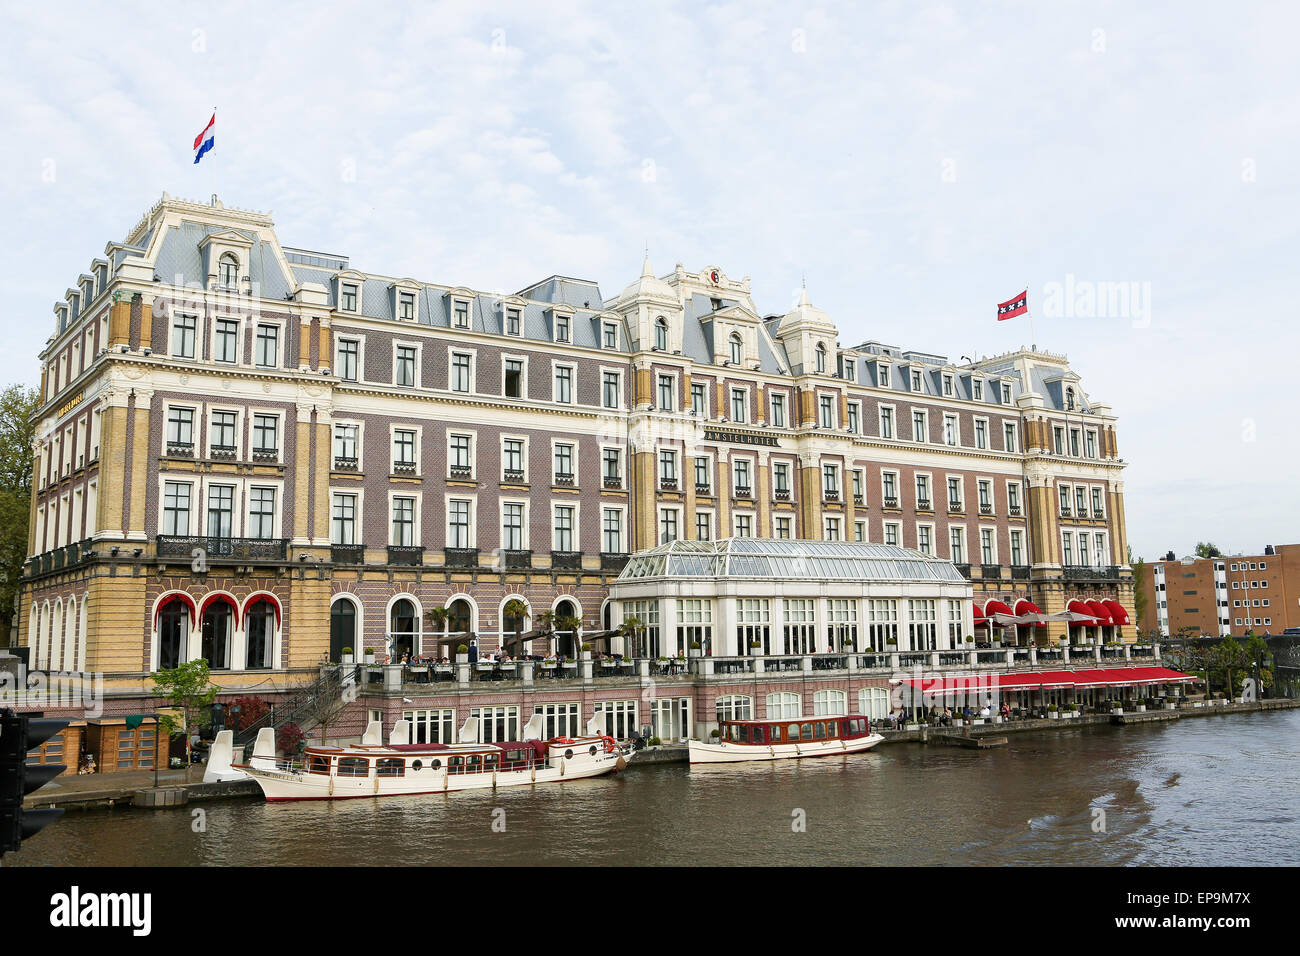 AMSTERDAM, Pays-Bas - 11 MAI 2015 : Hôtel Amstel célèbre dans le centre d'Amsterdam, aux Pays-Bas. Banque D'Images